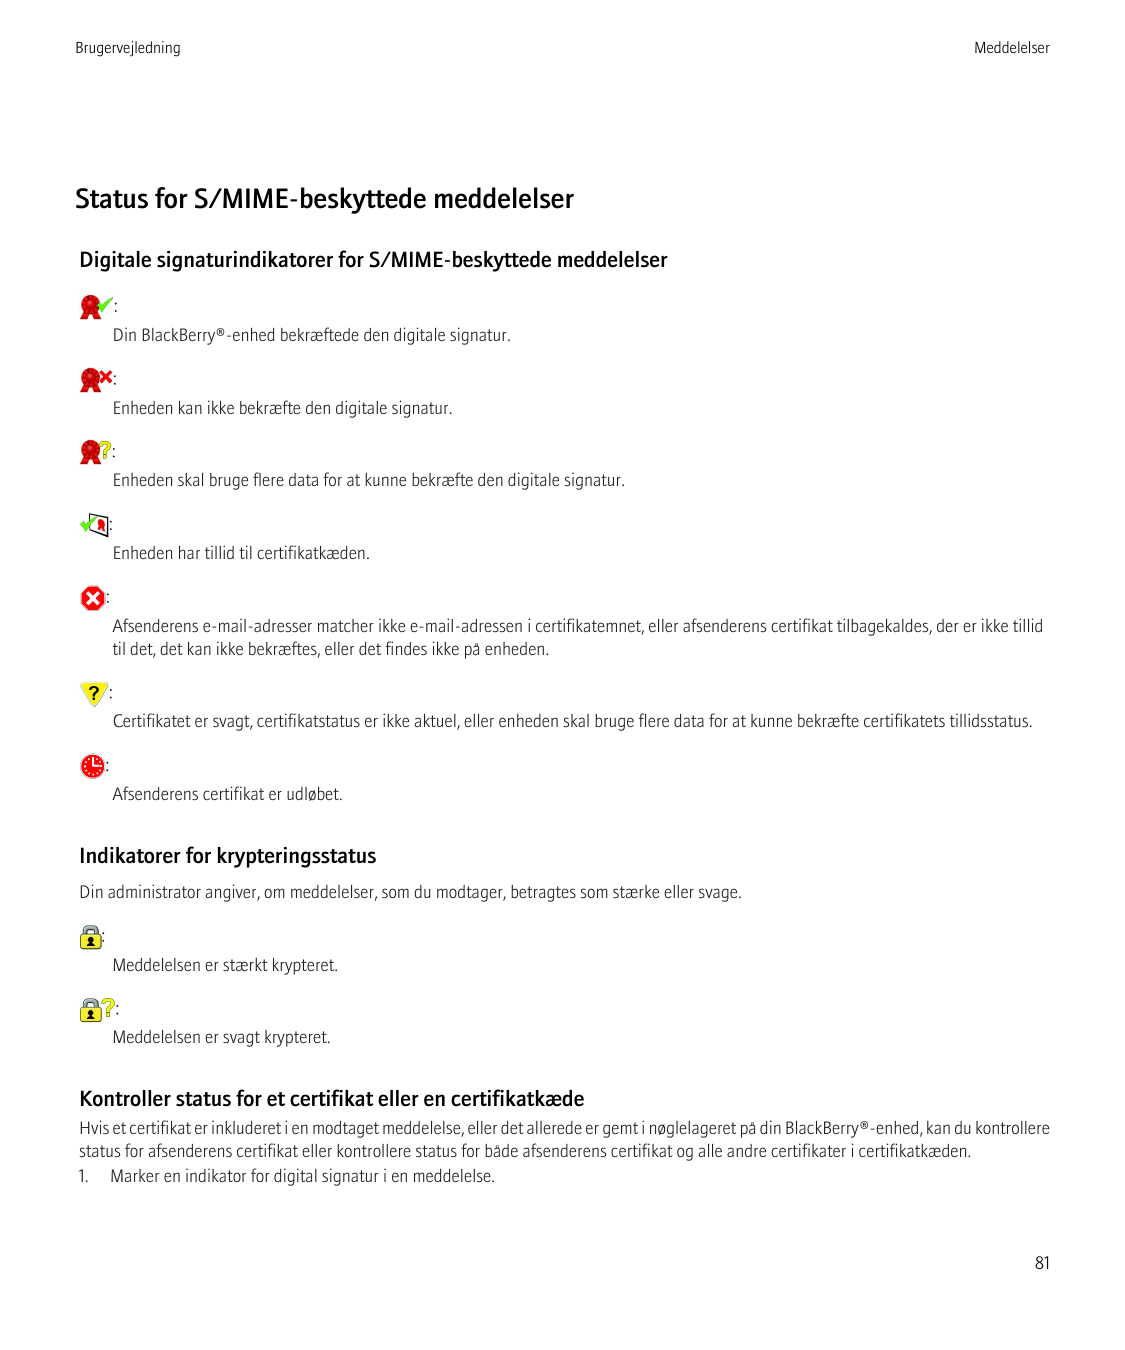 BrugervejledningMeddelelserStatus for S/MIME-beskyttede meddelelserDigitale signaturindikatorer for S/MIME-beskyttede meddelelse